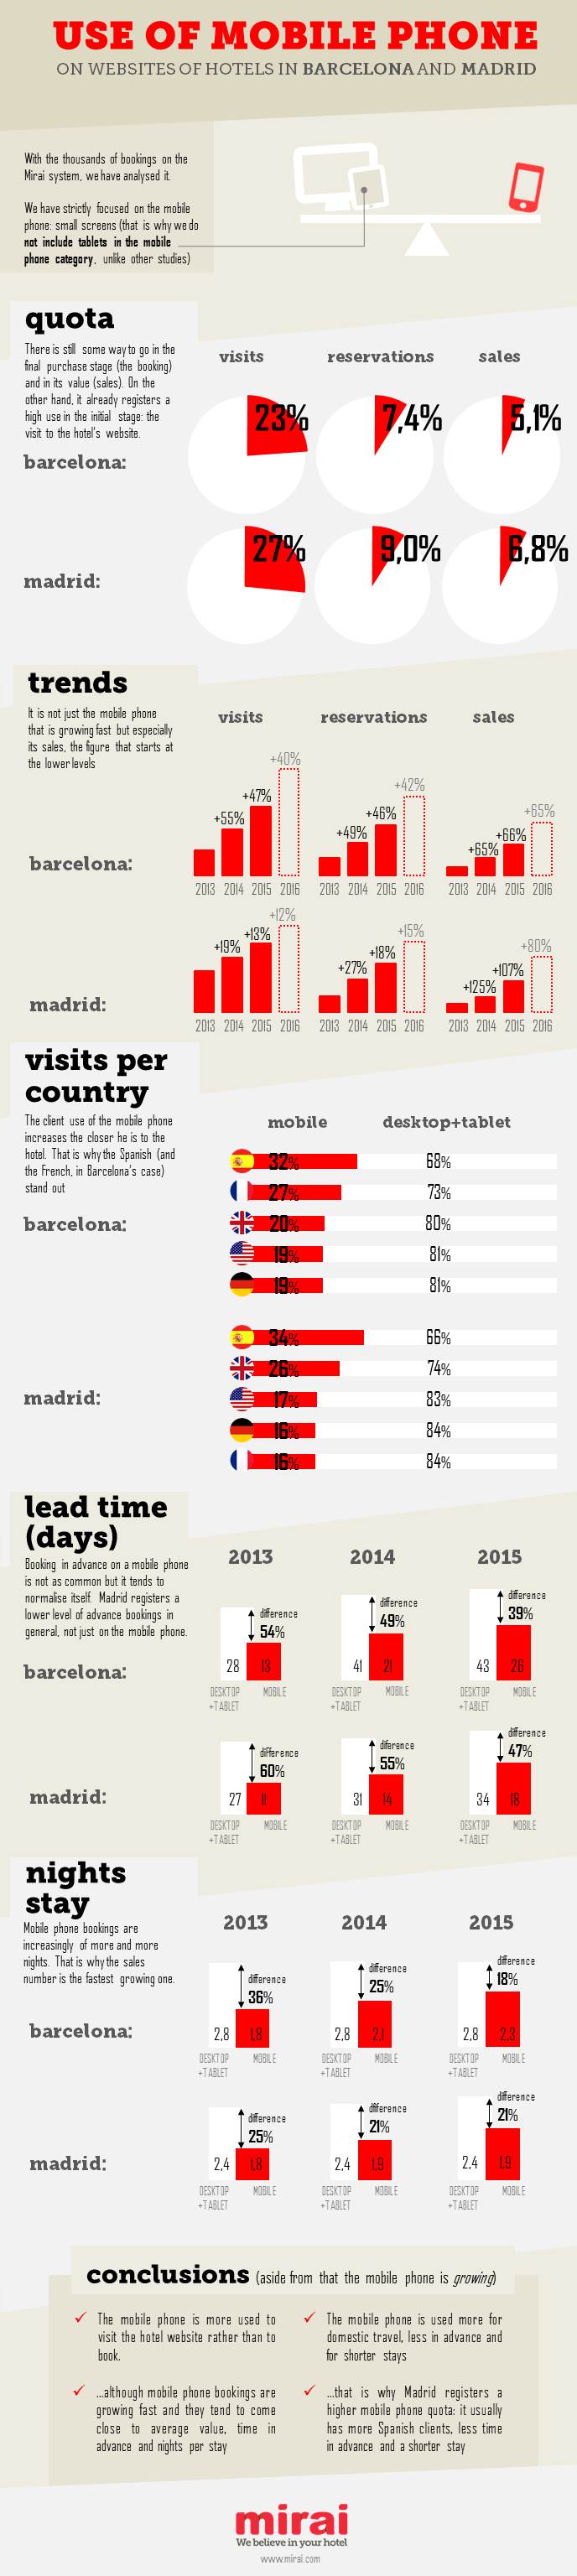 use of mobile hotel websites barcelona madrid